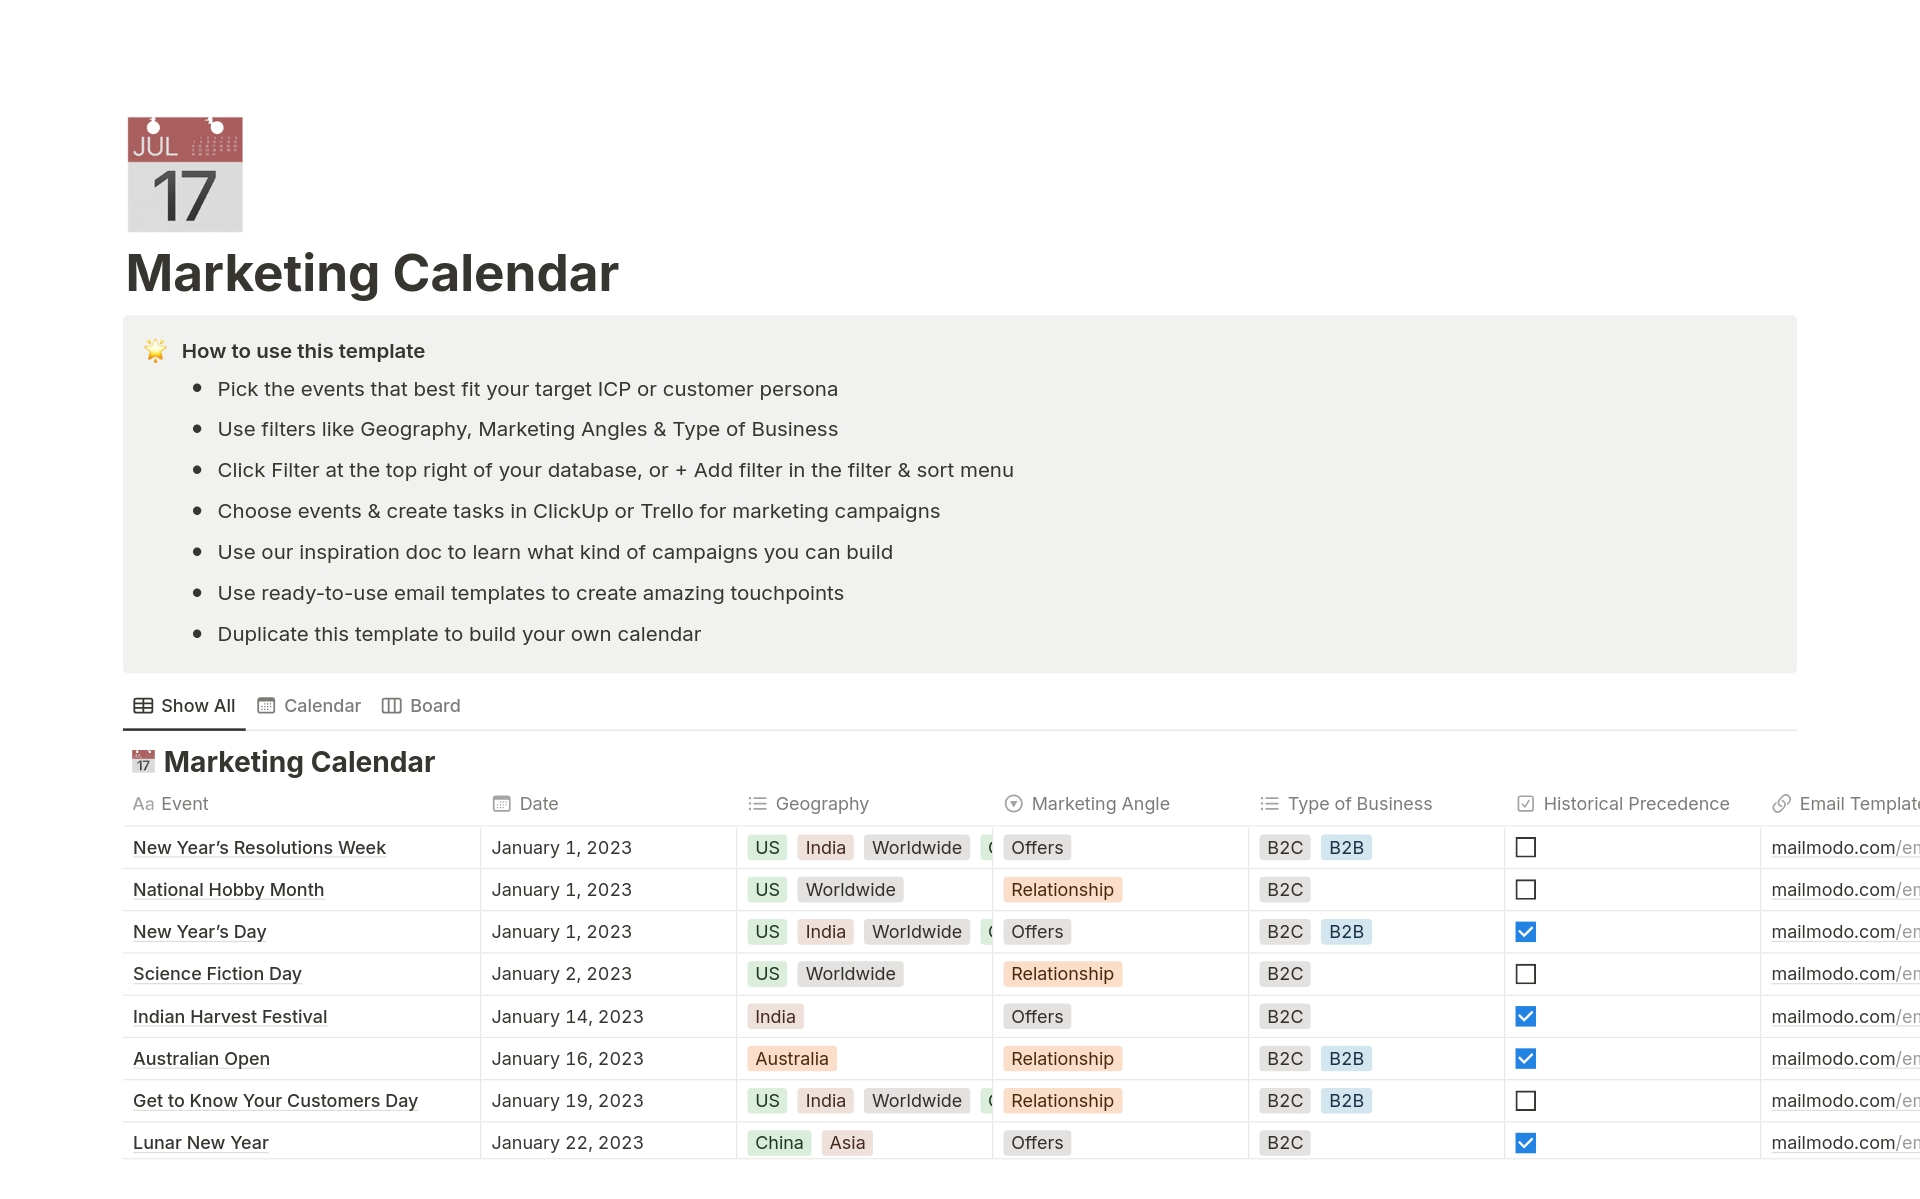 En förhandsgranskning av mallen för Mailmodo's Marketing Calendar